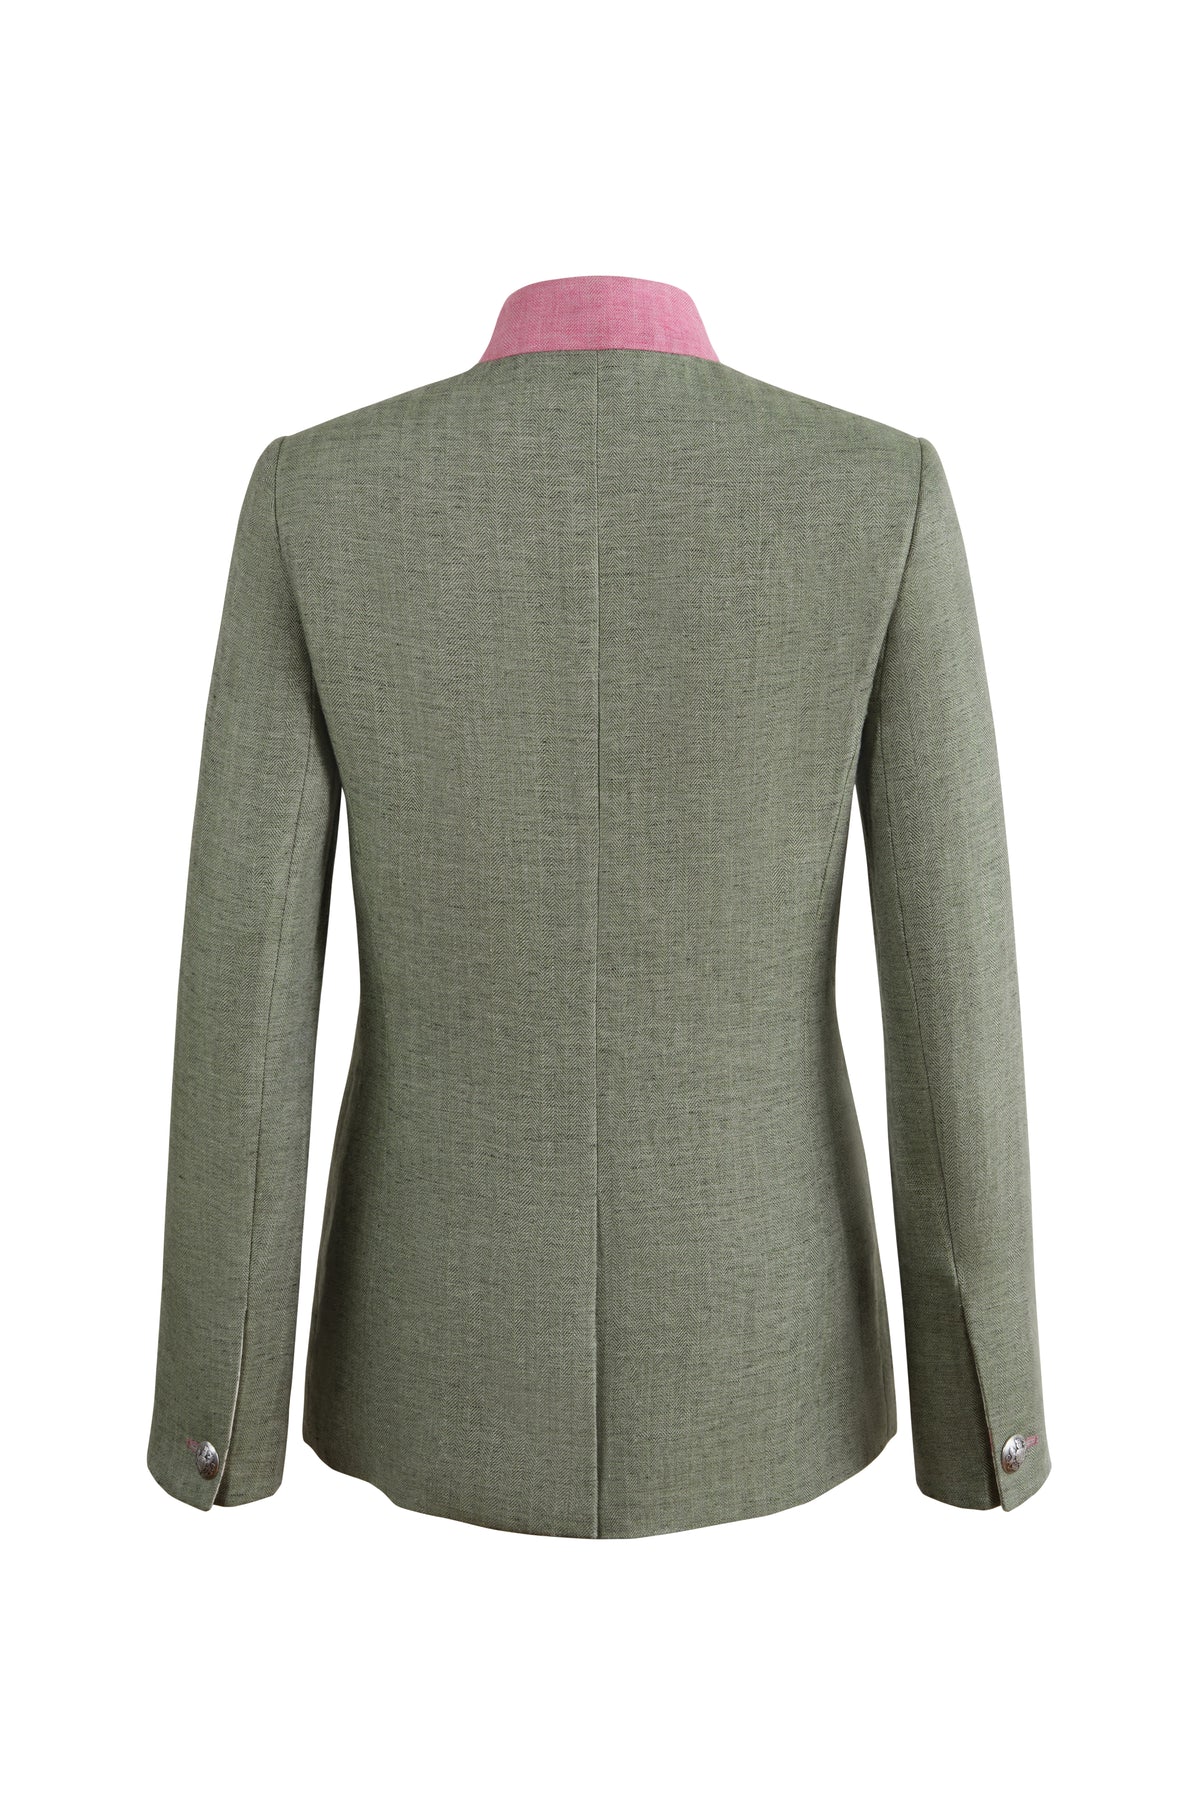 Camille Tale 2.0 Jacket in Green Linen